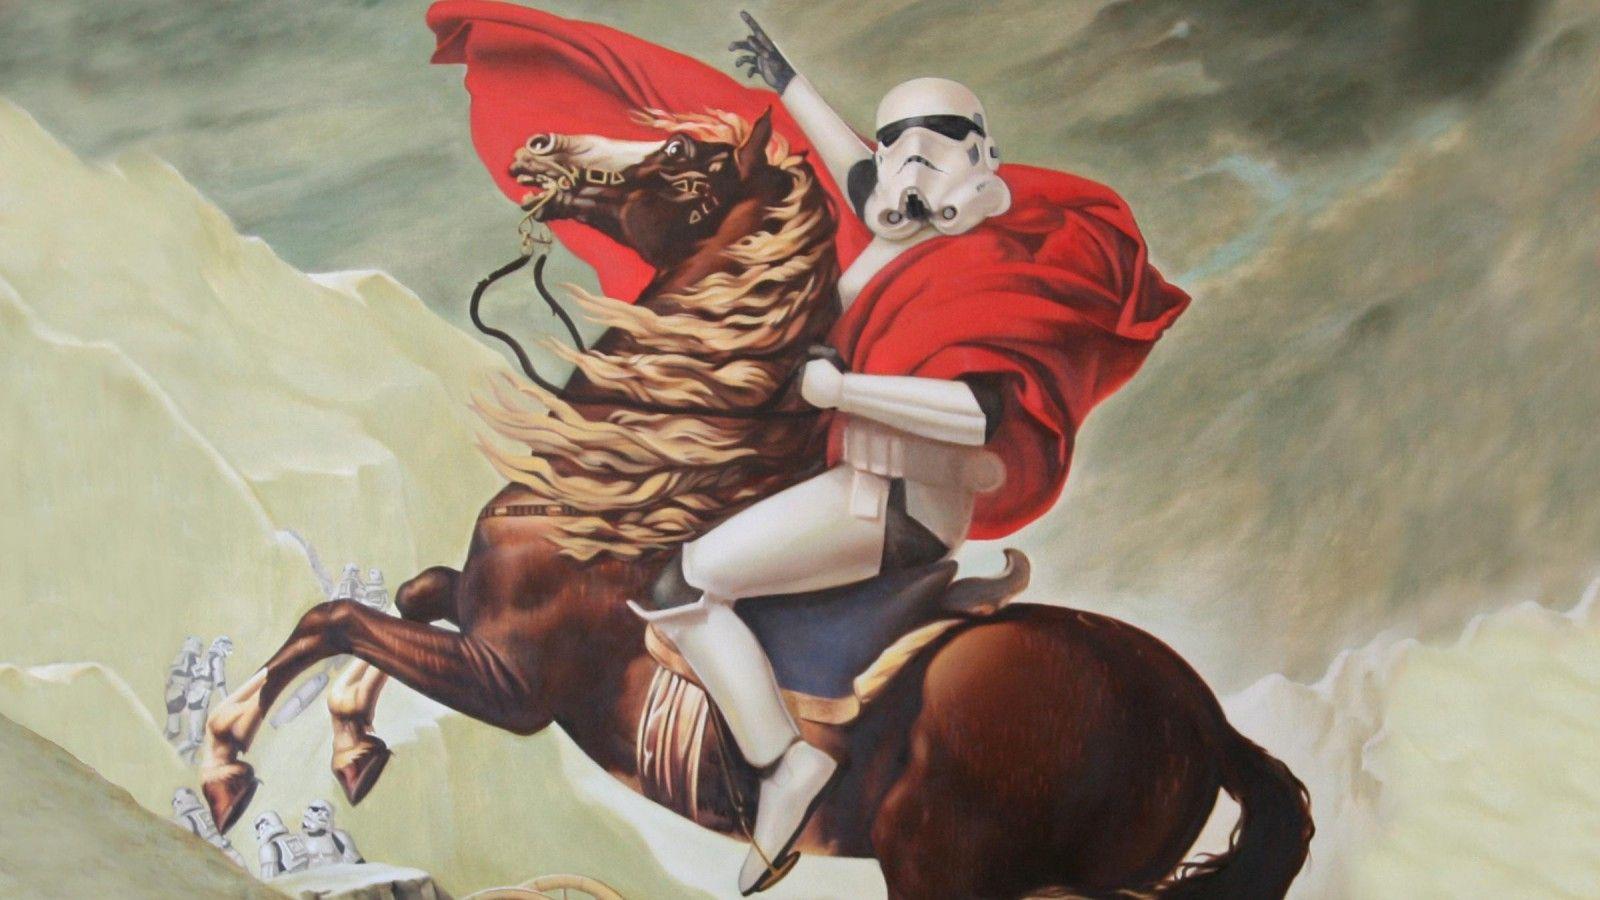 Extraordinary Star Wars Storm Trooper Wallpaper 1600x900PX